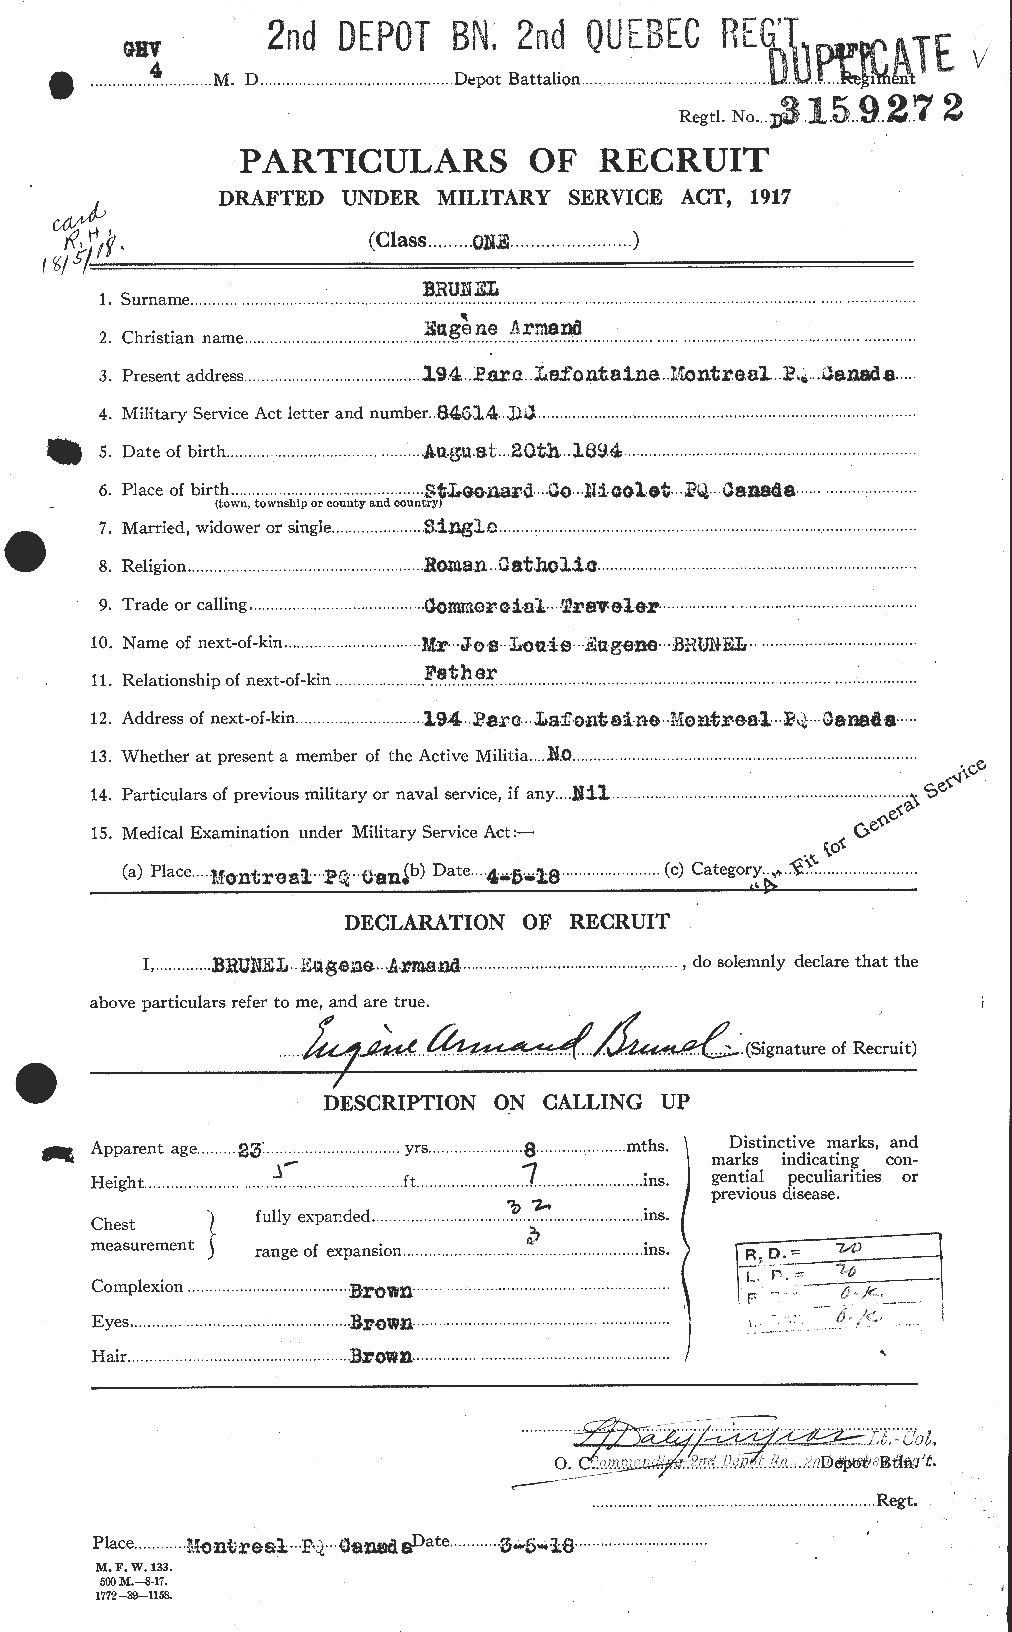 Dossiers du Personnel de la Première Guerre mondiale - CEC 268335a